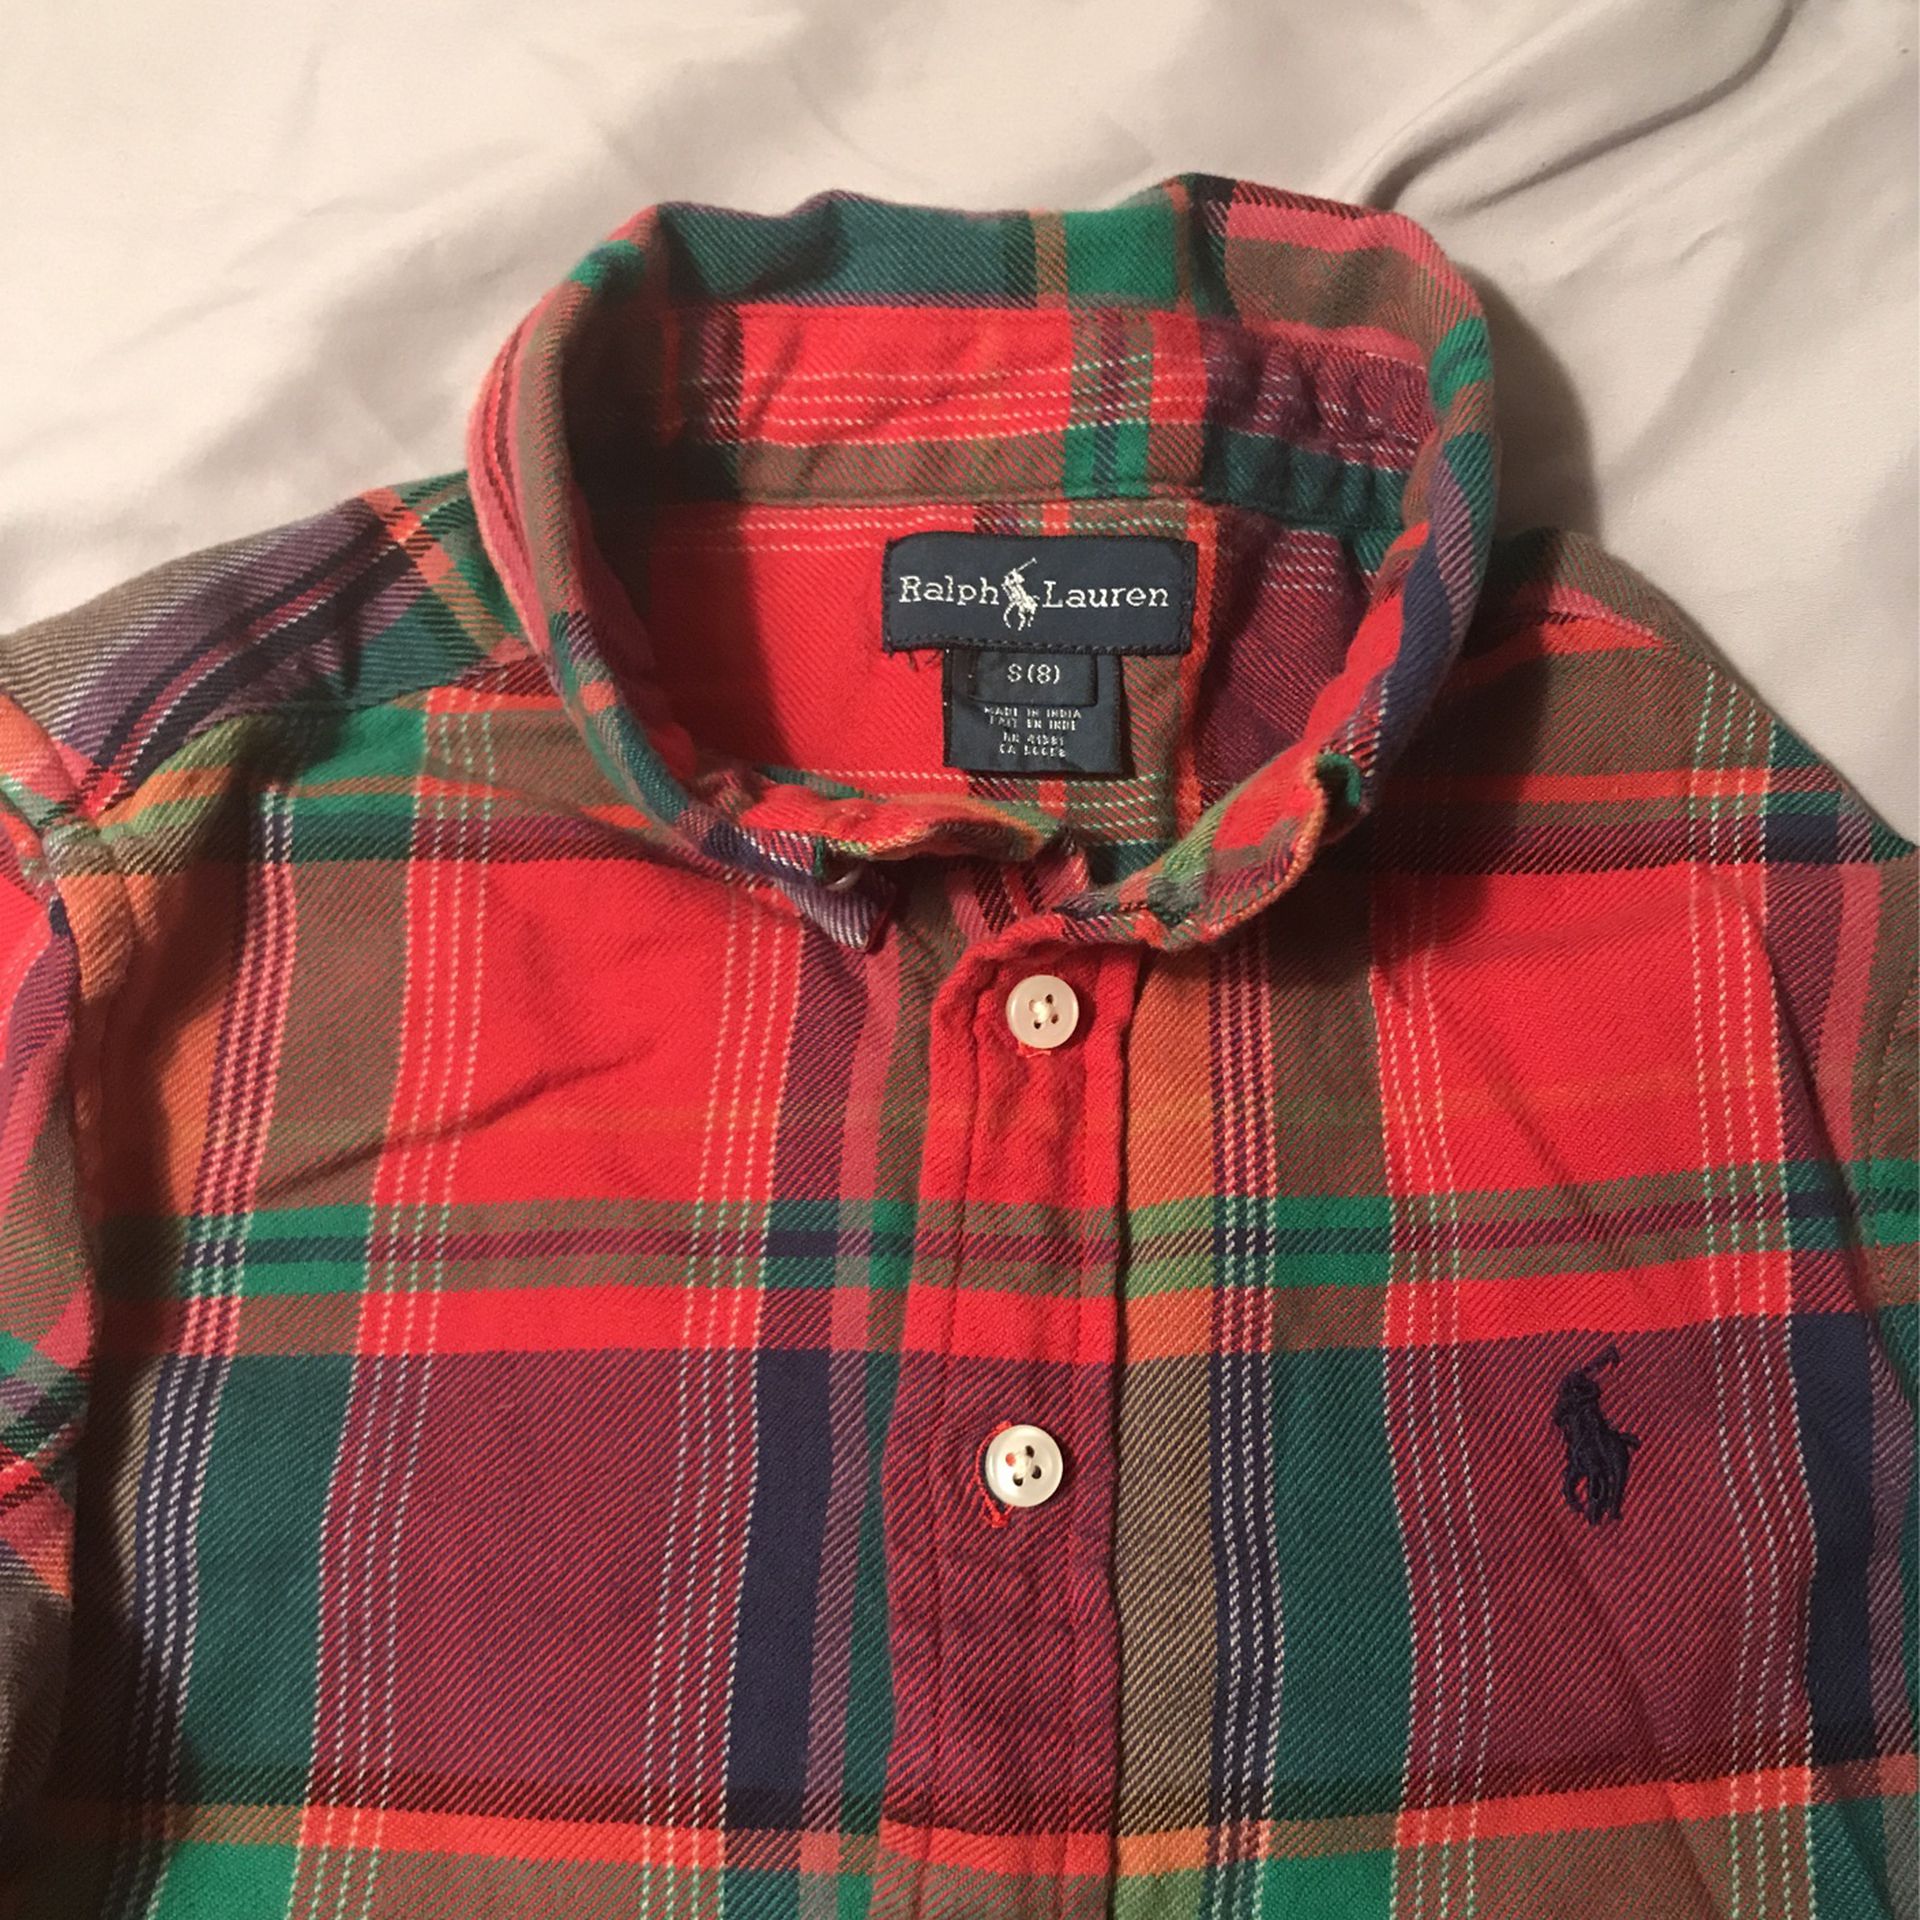 Ralph Lauren Boys Plaid Shirt - Size 8